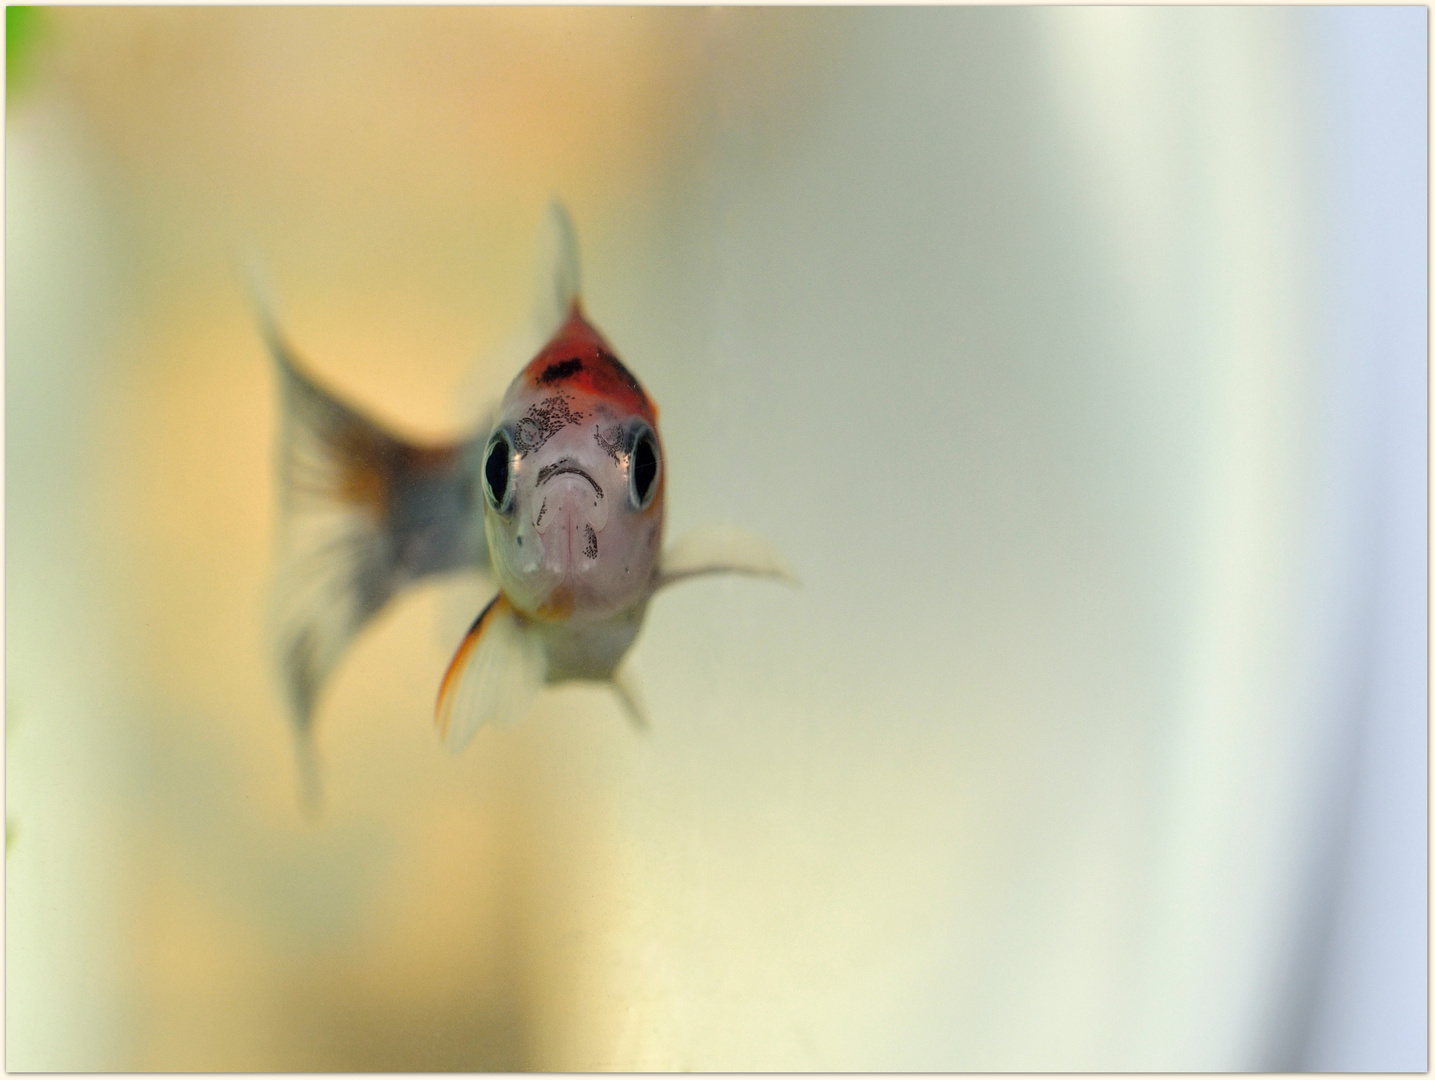 Portrait d'un poisson rouge